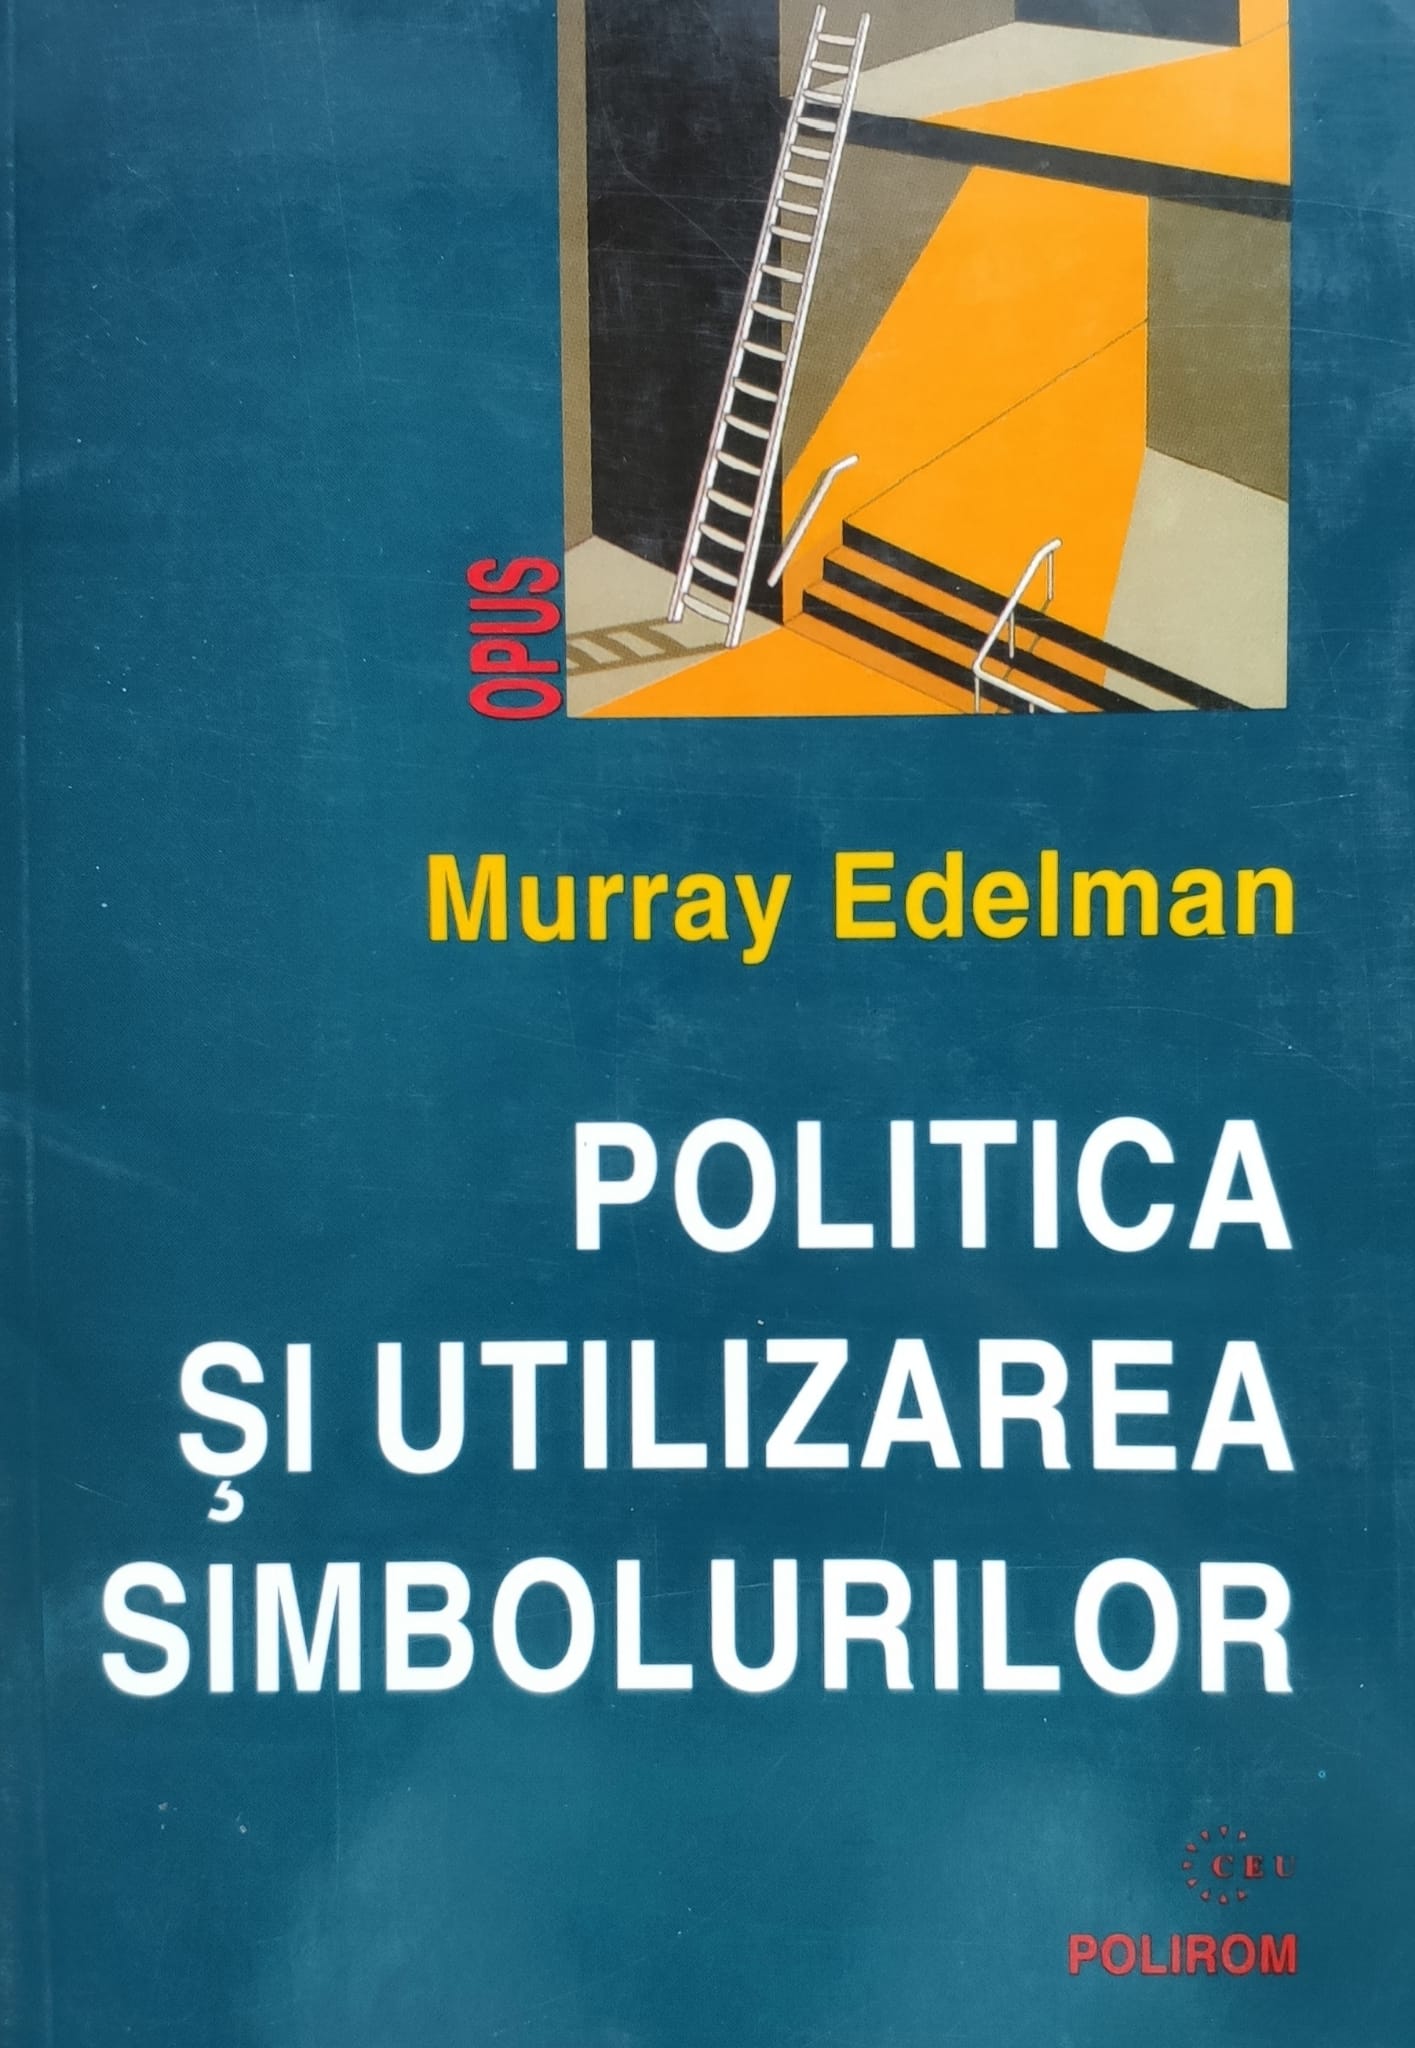 politica si utilizarea simbolurilor                                                                  m. edelman                                                                                          